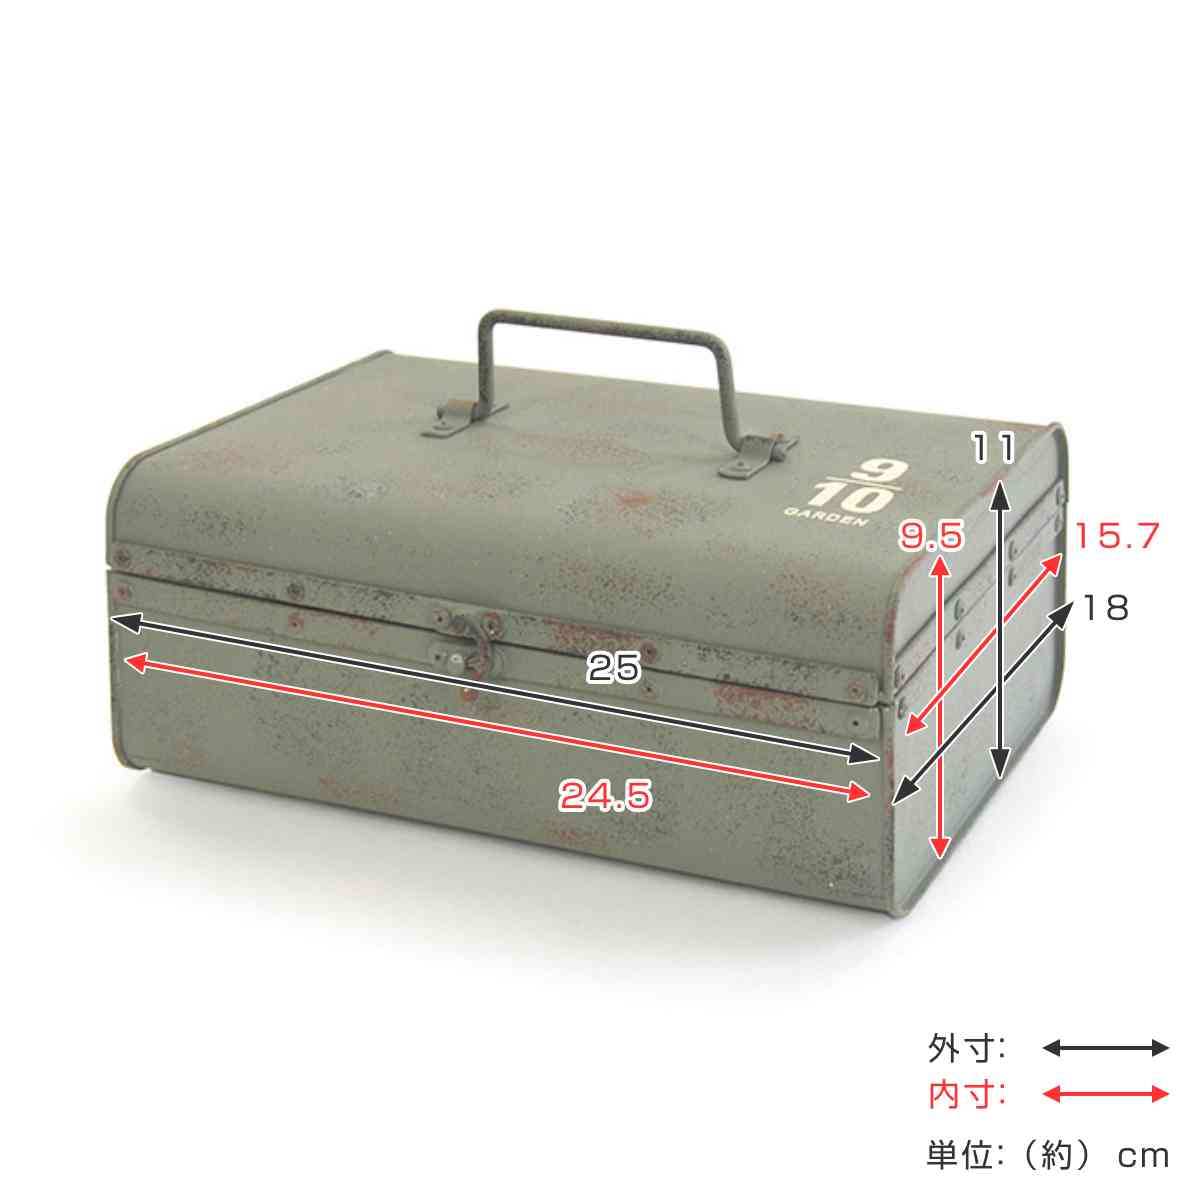 工具箱 ツールボックス レトロ アンティーク - アンティーク雑貨